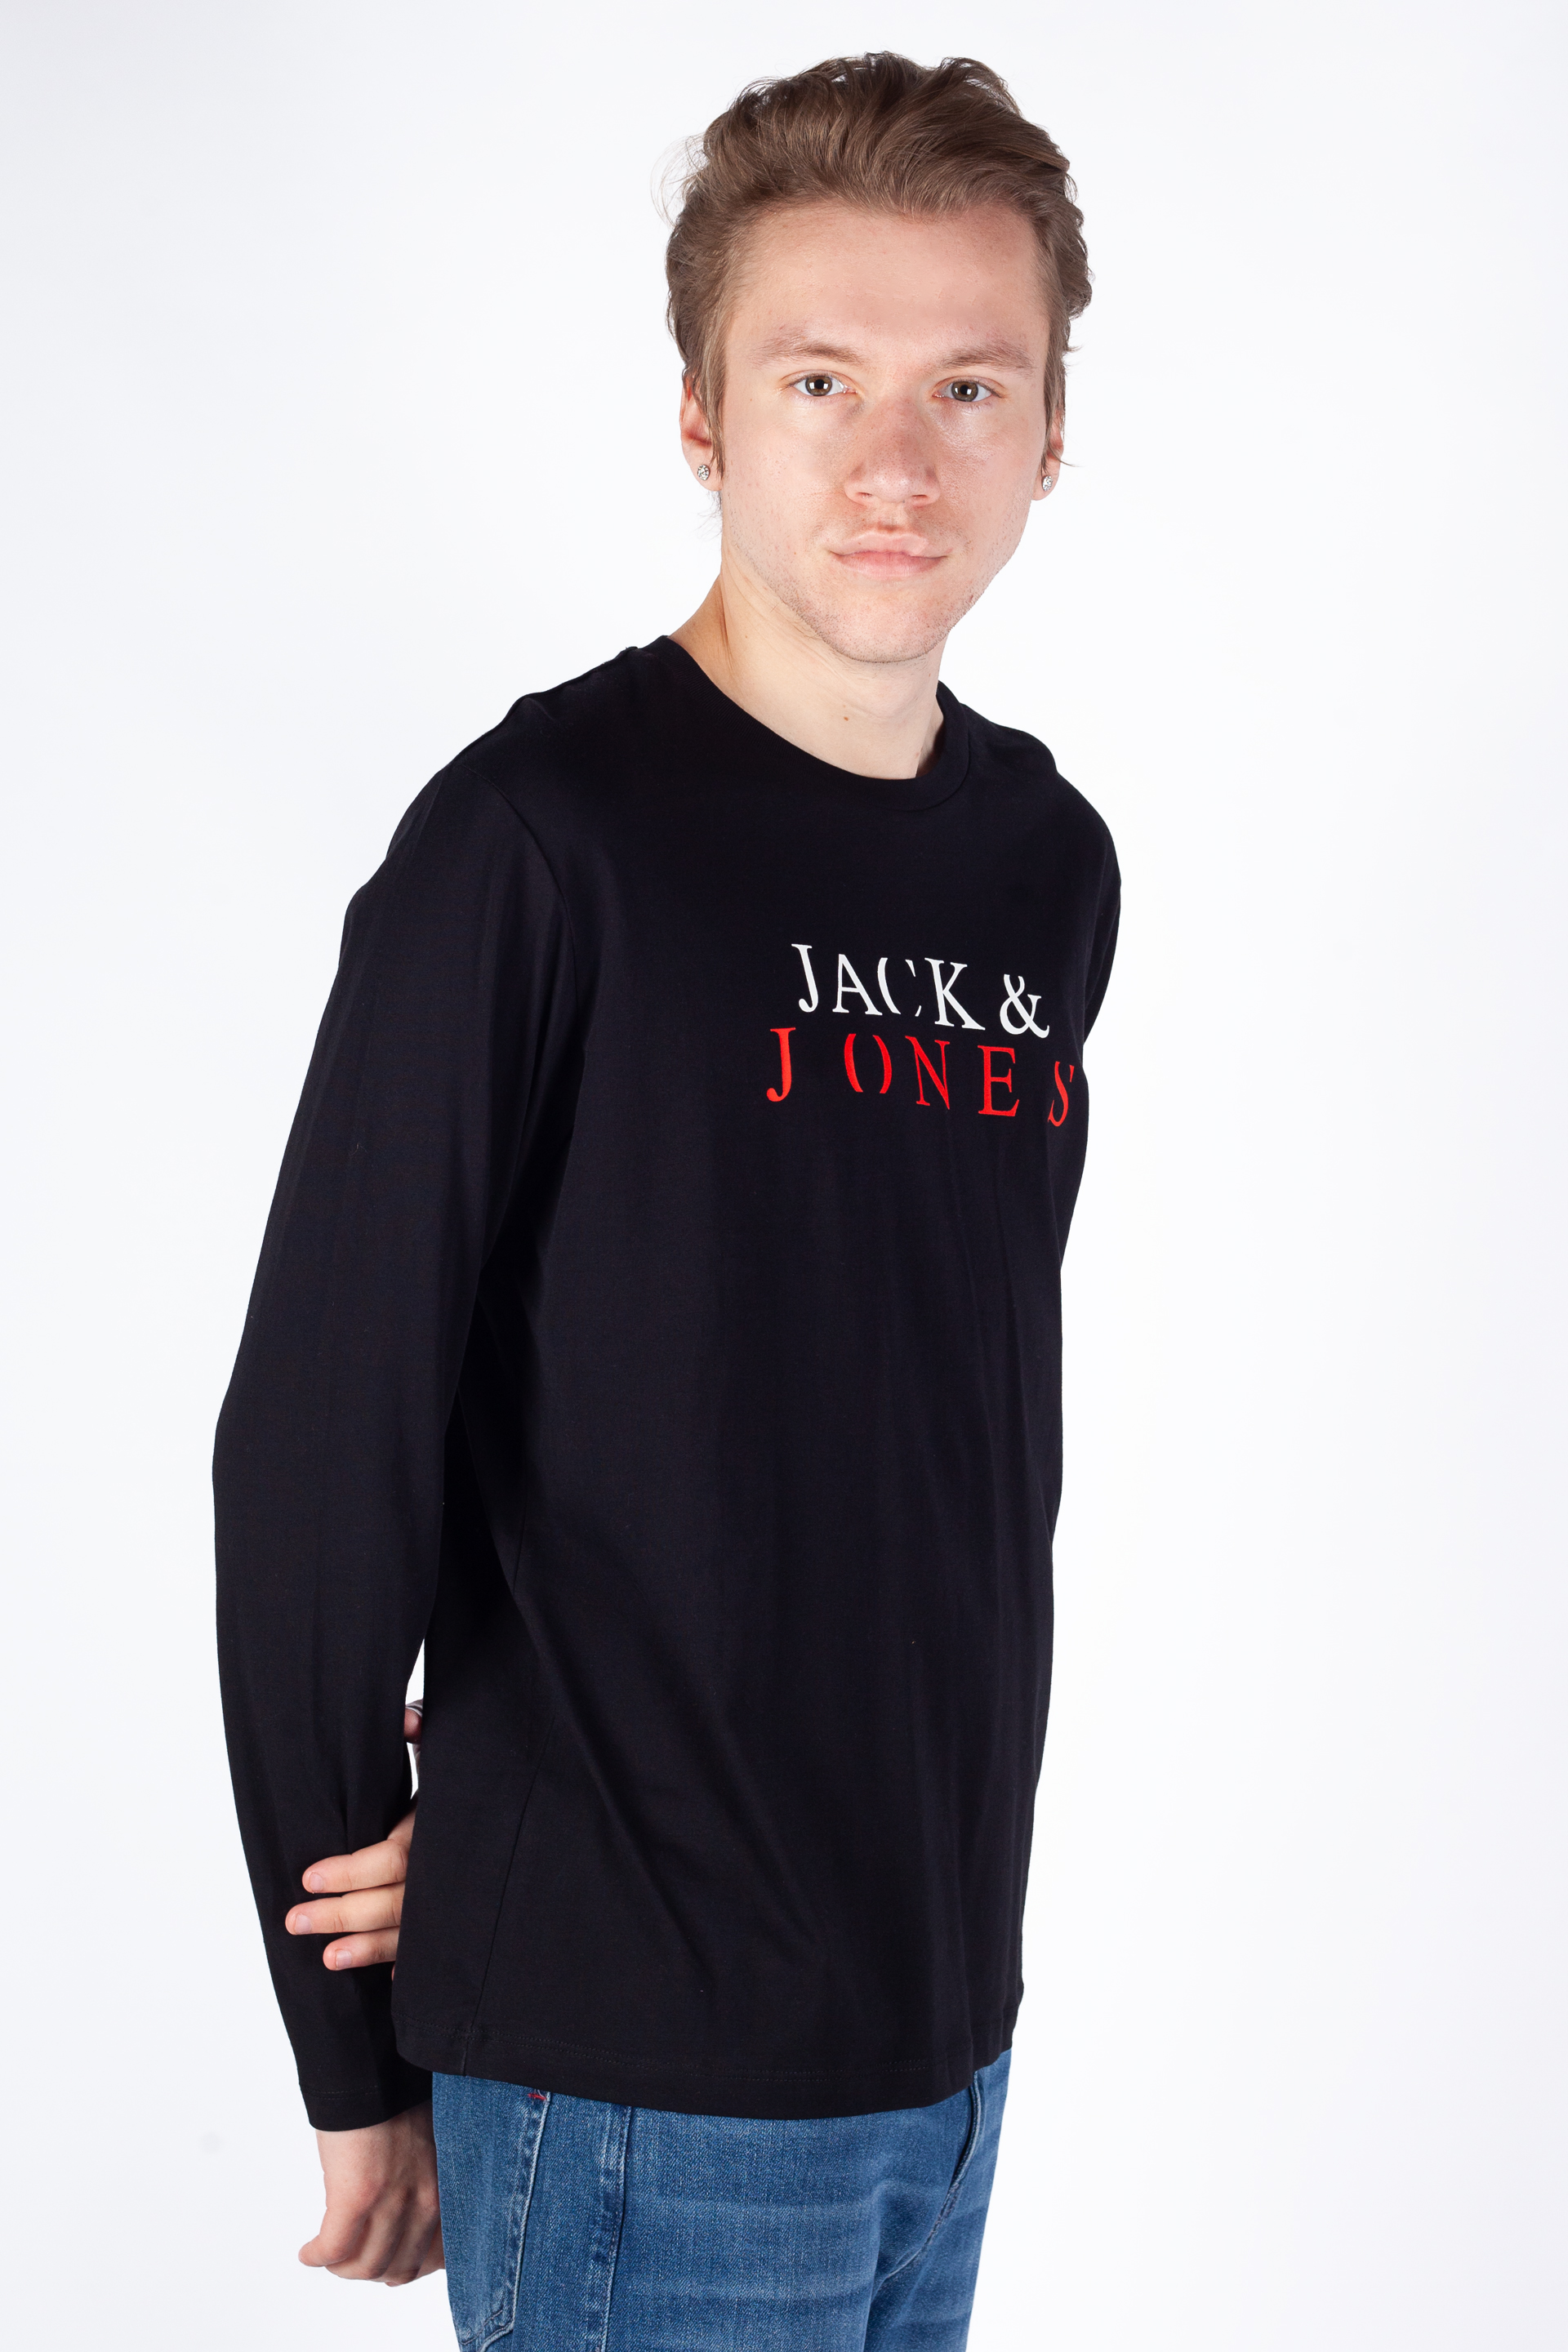 T-krekls ar garām rokām JACK & JONES 12244403-Black